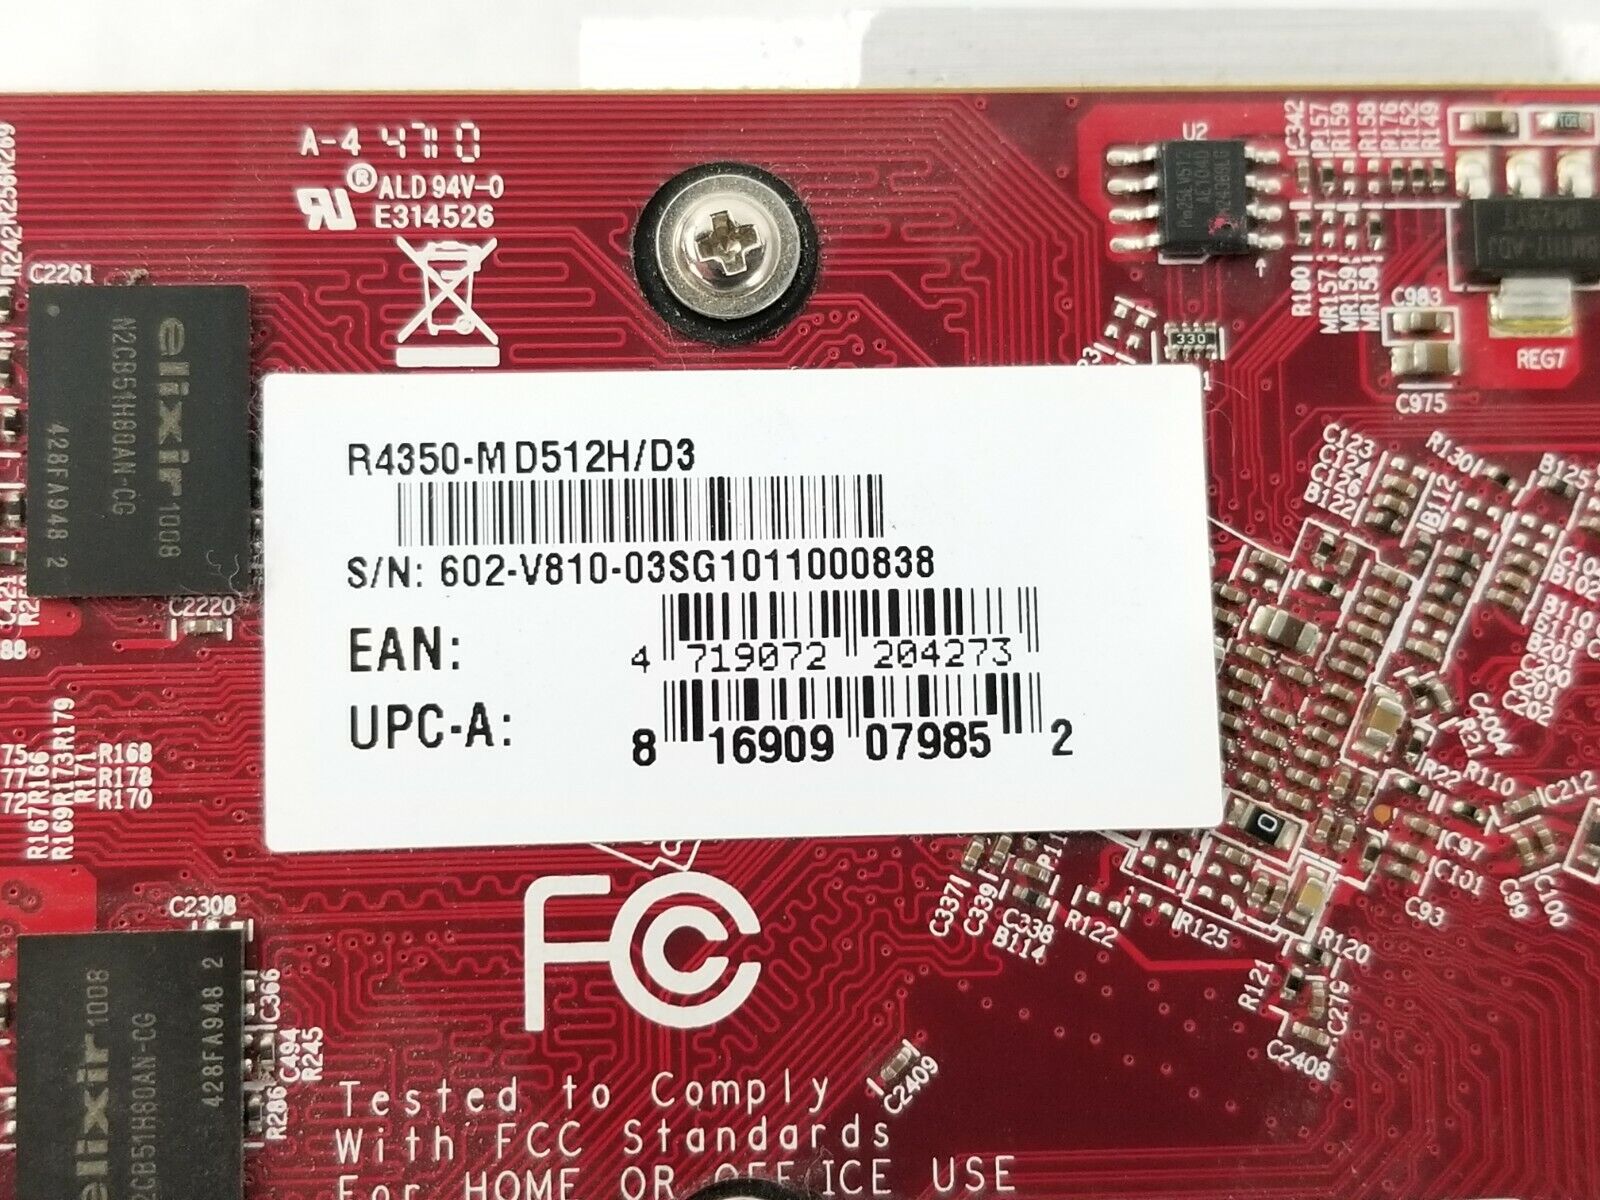 MSI Radeon HD 4350 DirectX 10.1 R4350-MD512H/D3 64-Bit DDR3 Video Card R4350-M